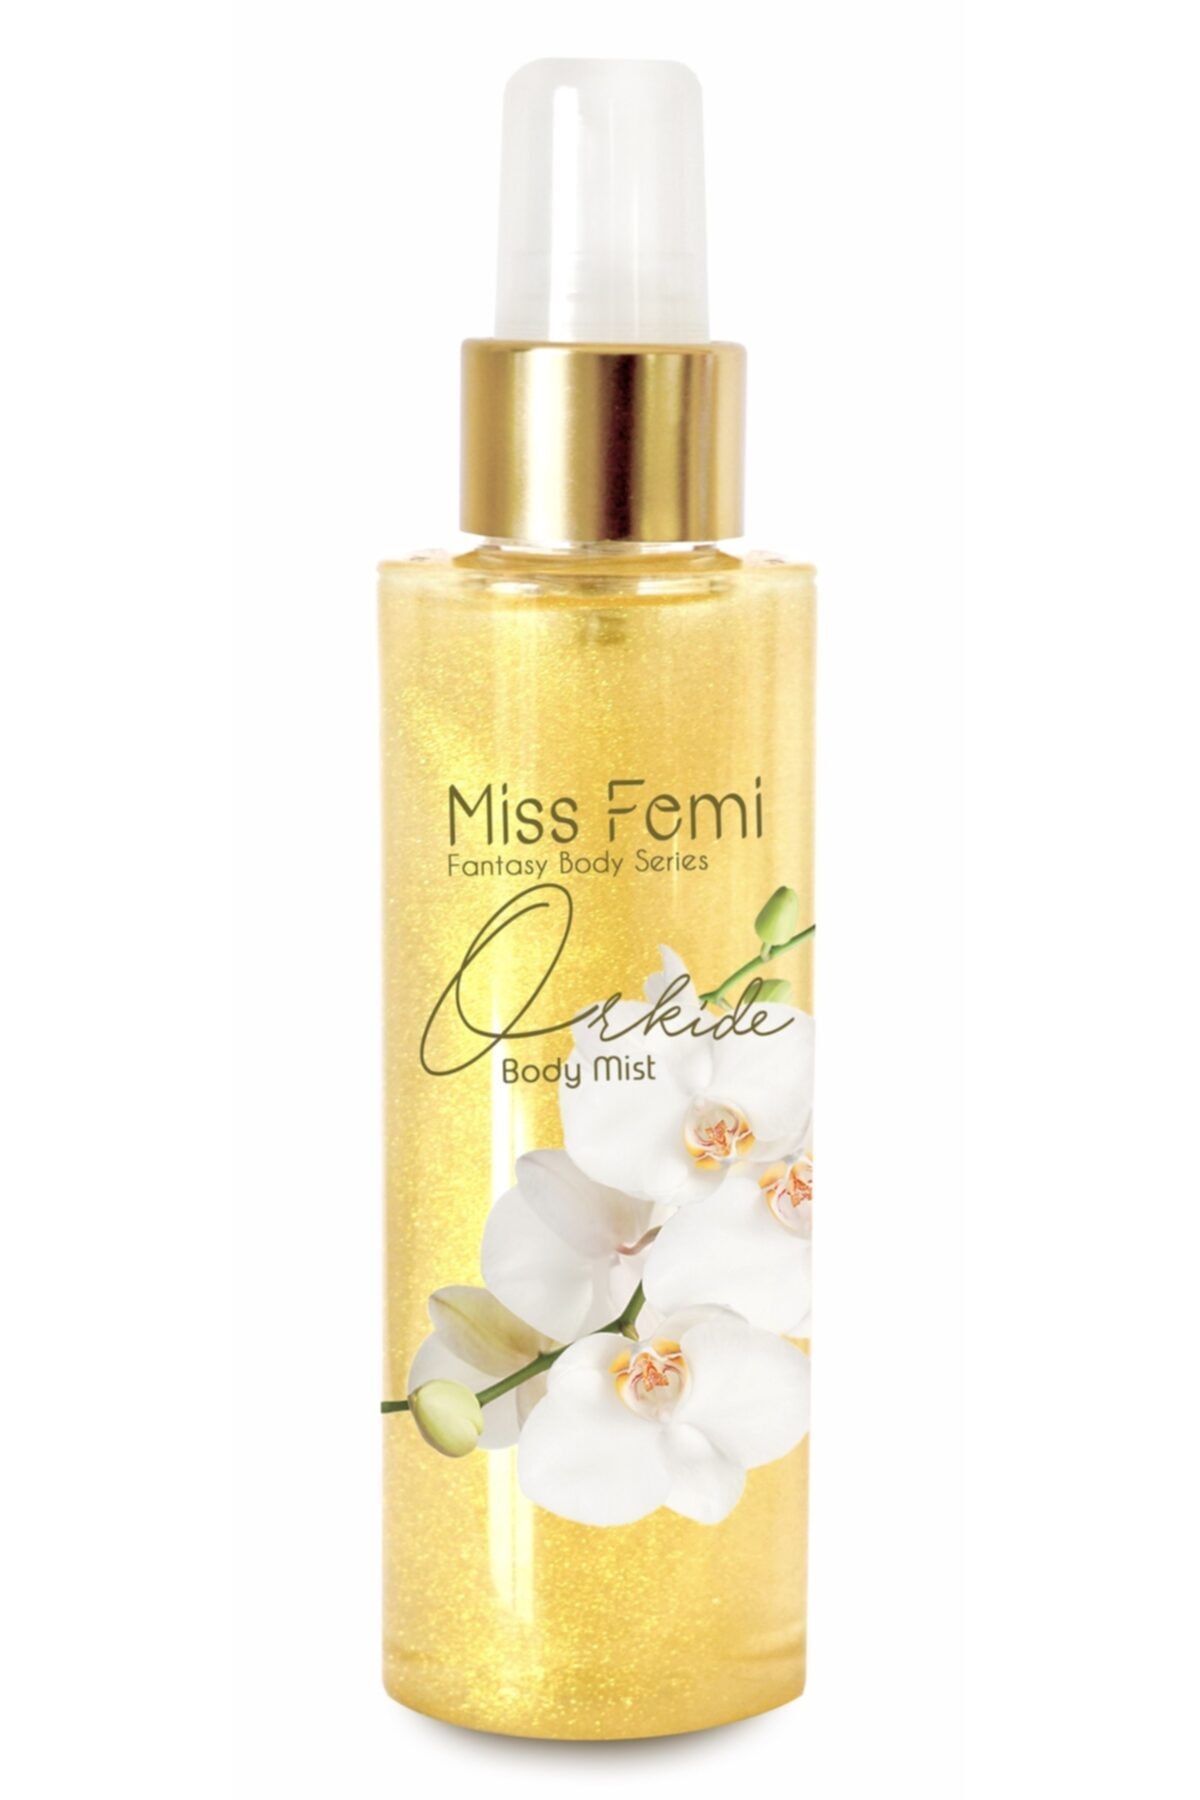 Misedor Missfemi Fantasy Body Mist Gold Orkide 150 ml